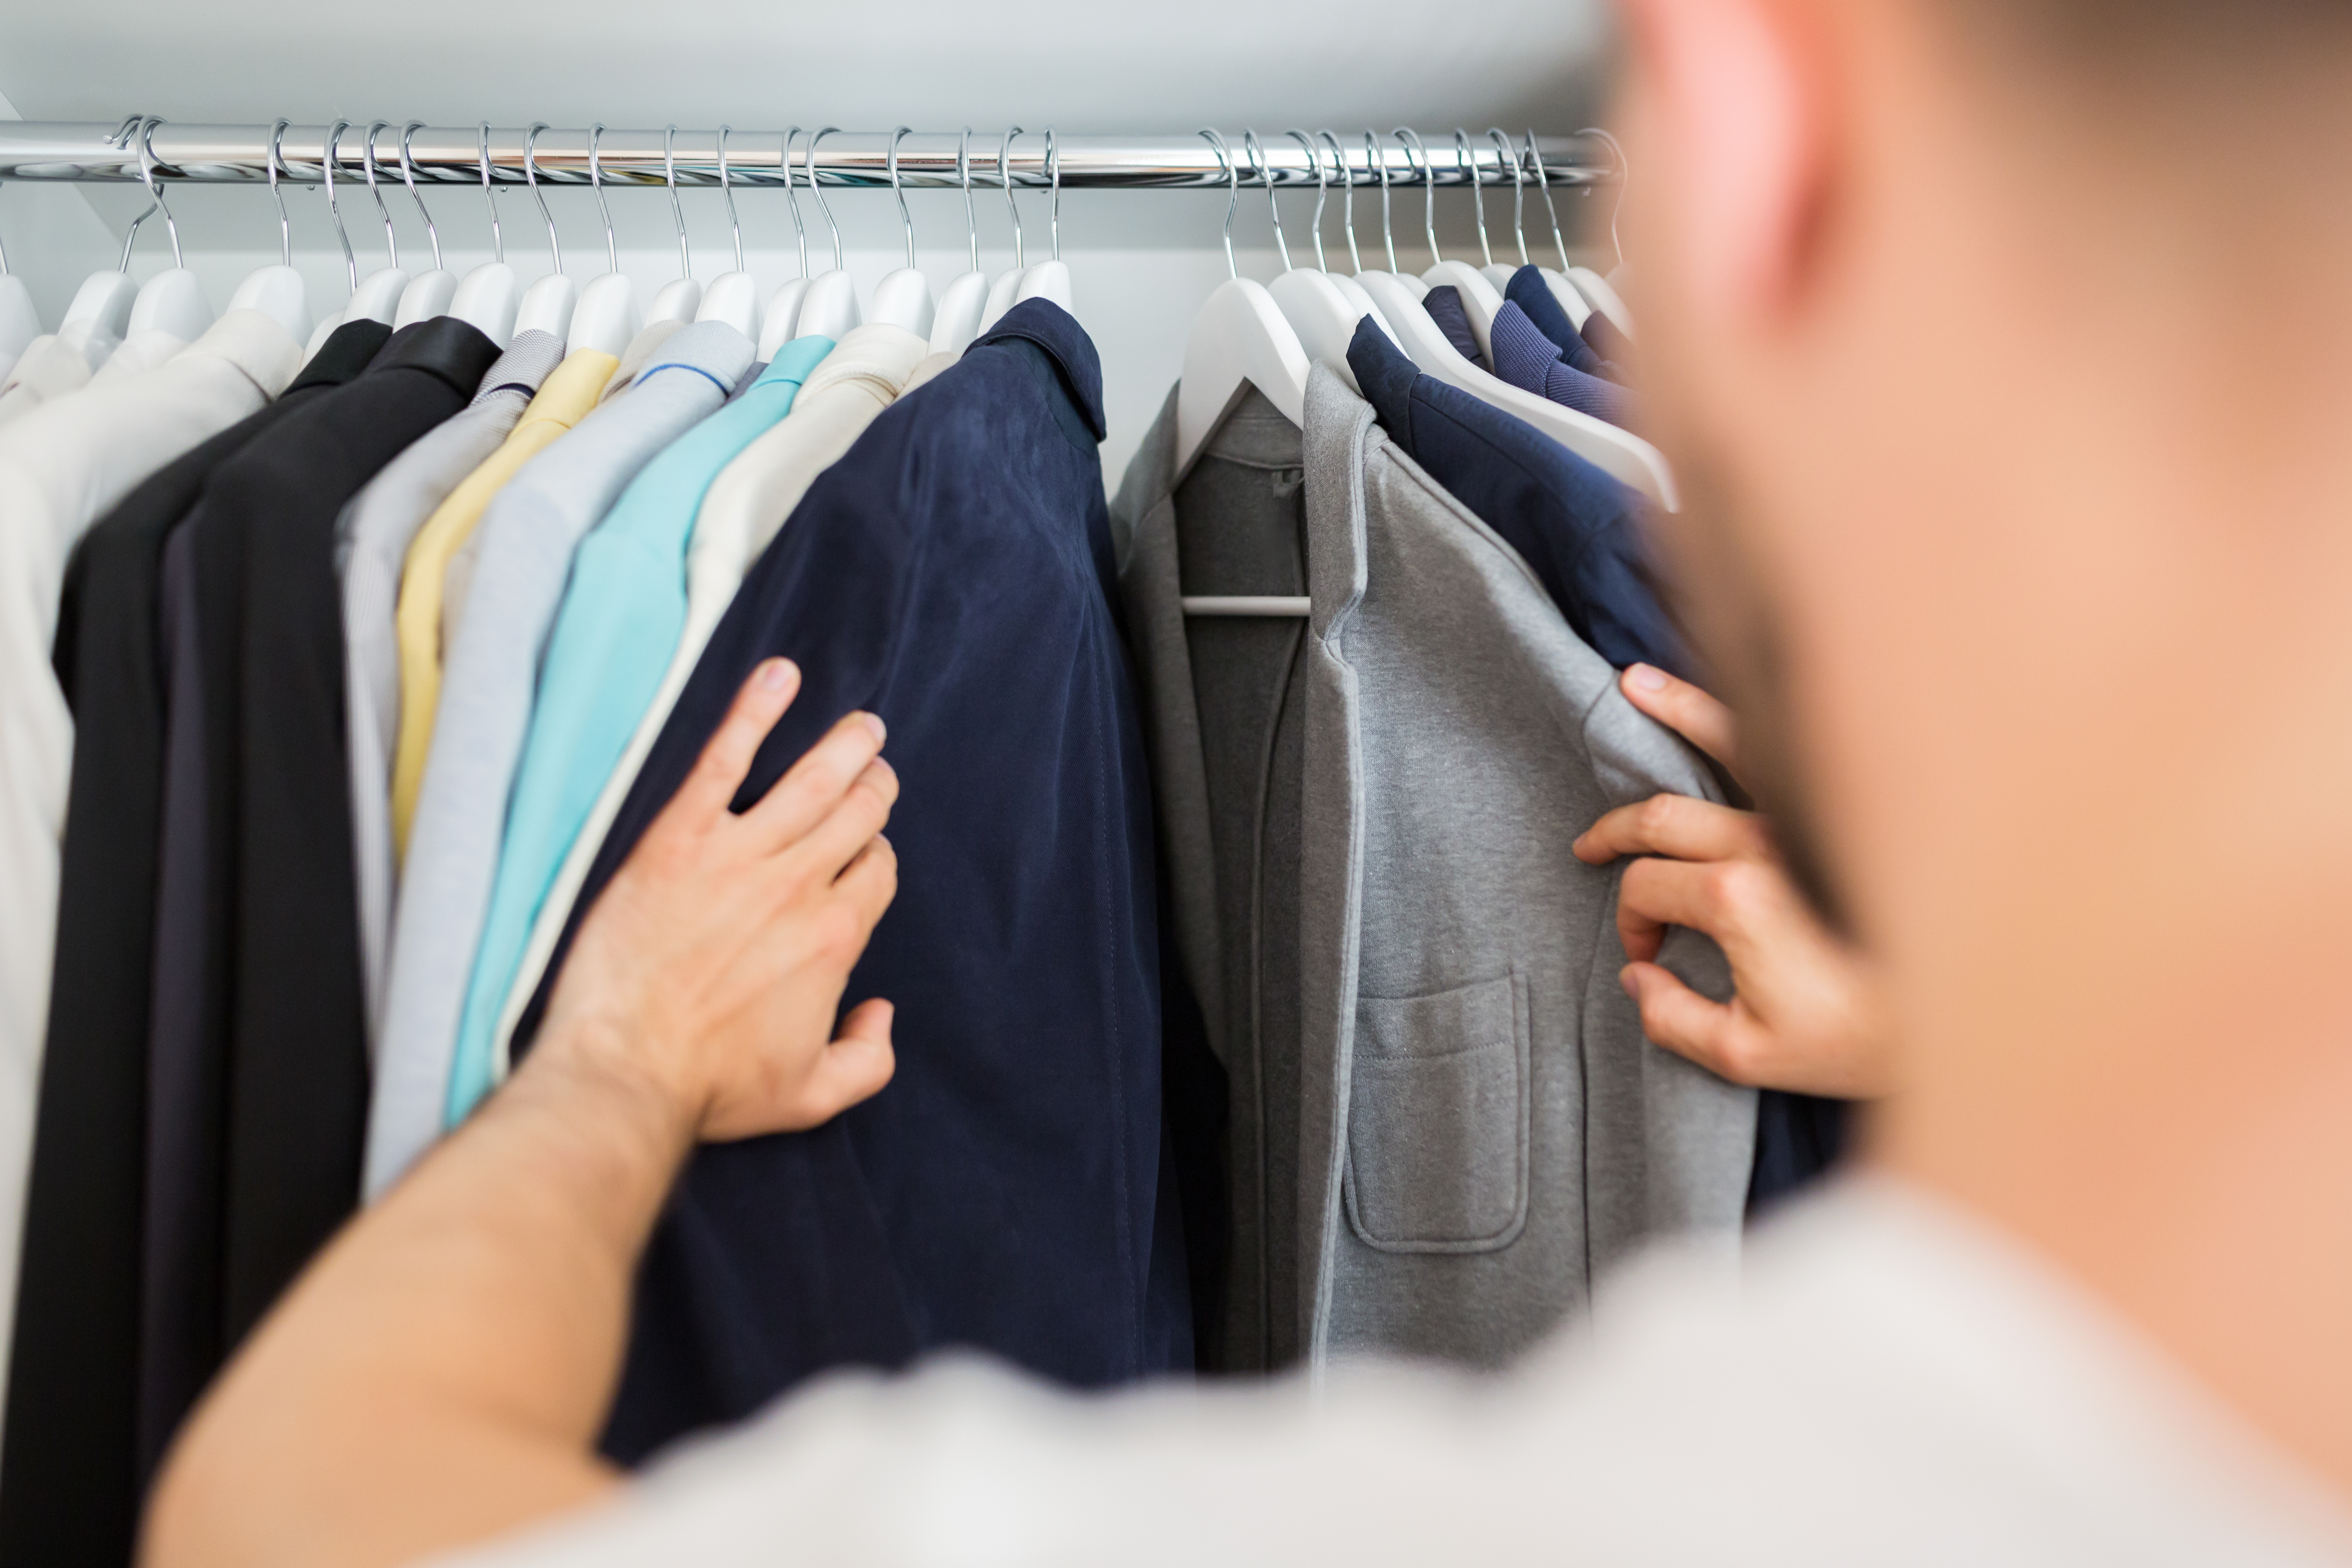 A man going through his closet | Source: Shutterstock